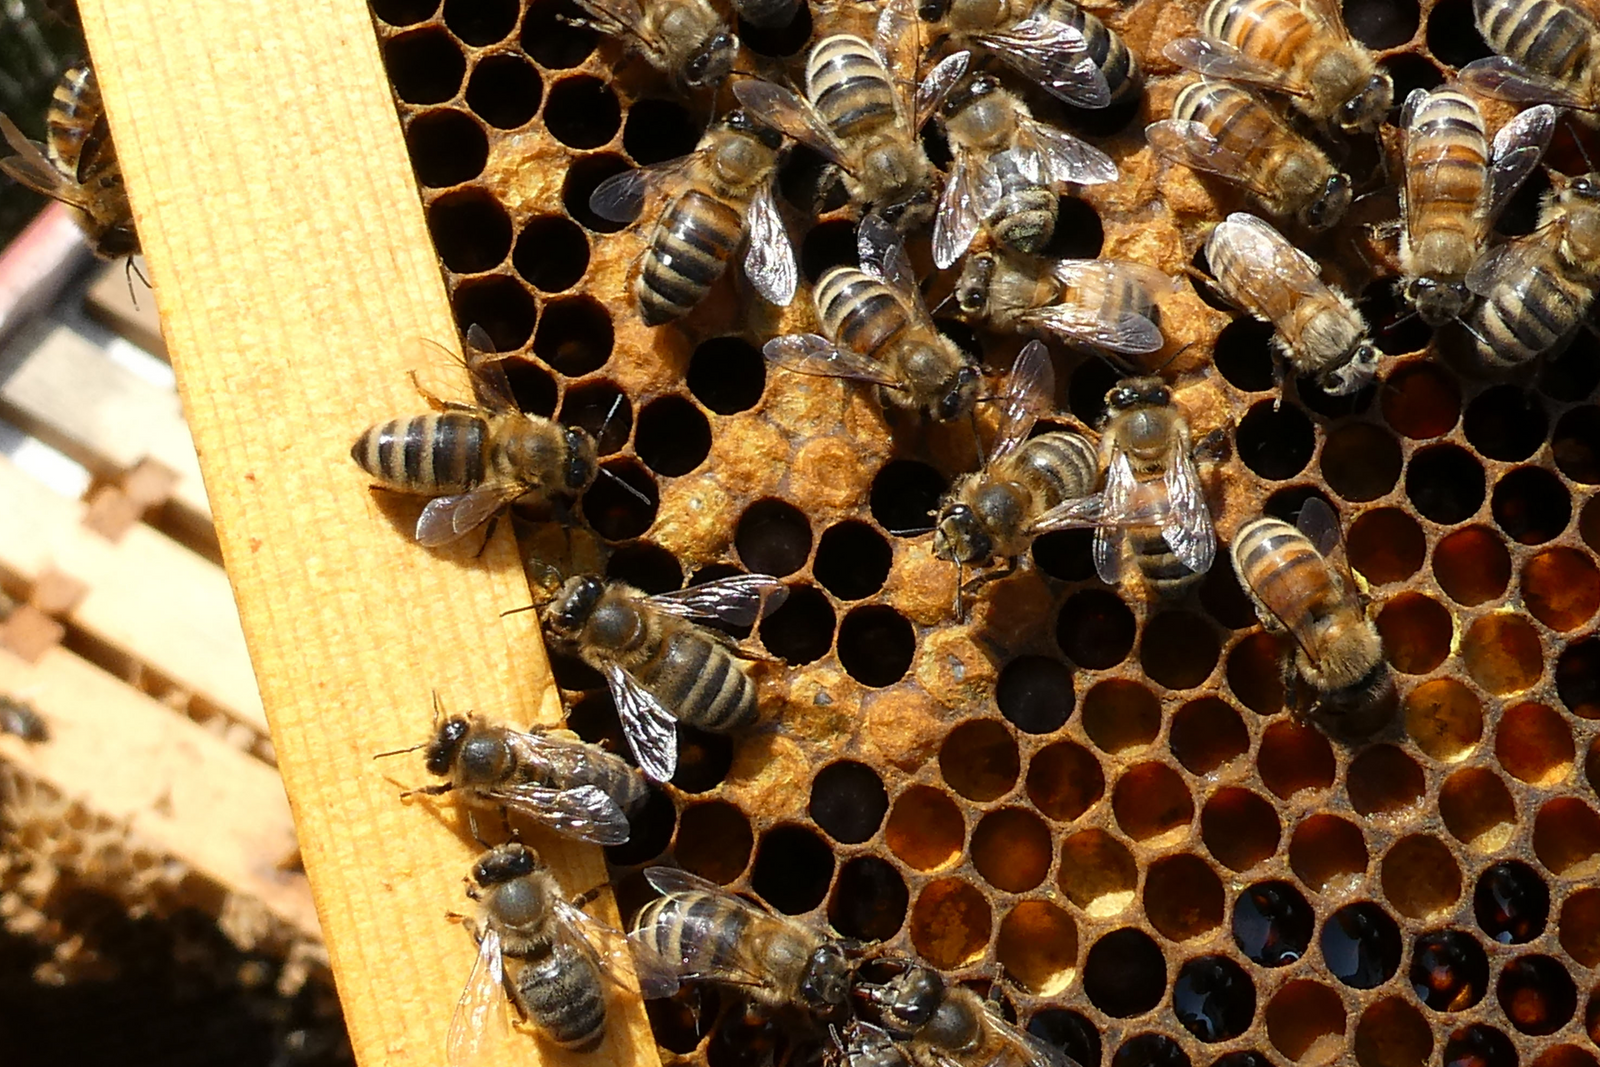 How do bees make honey? - ScottishBeeCompany